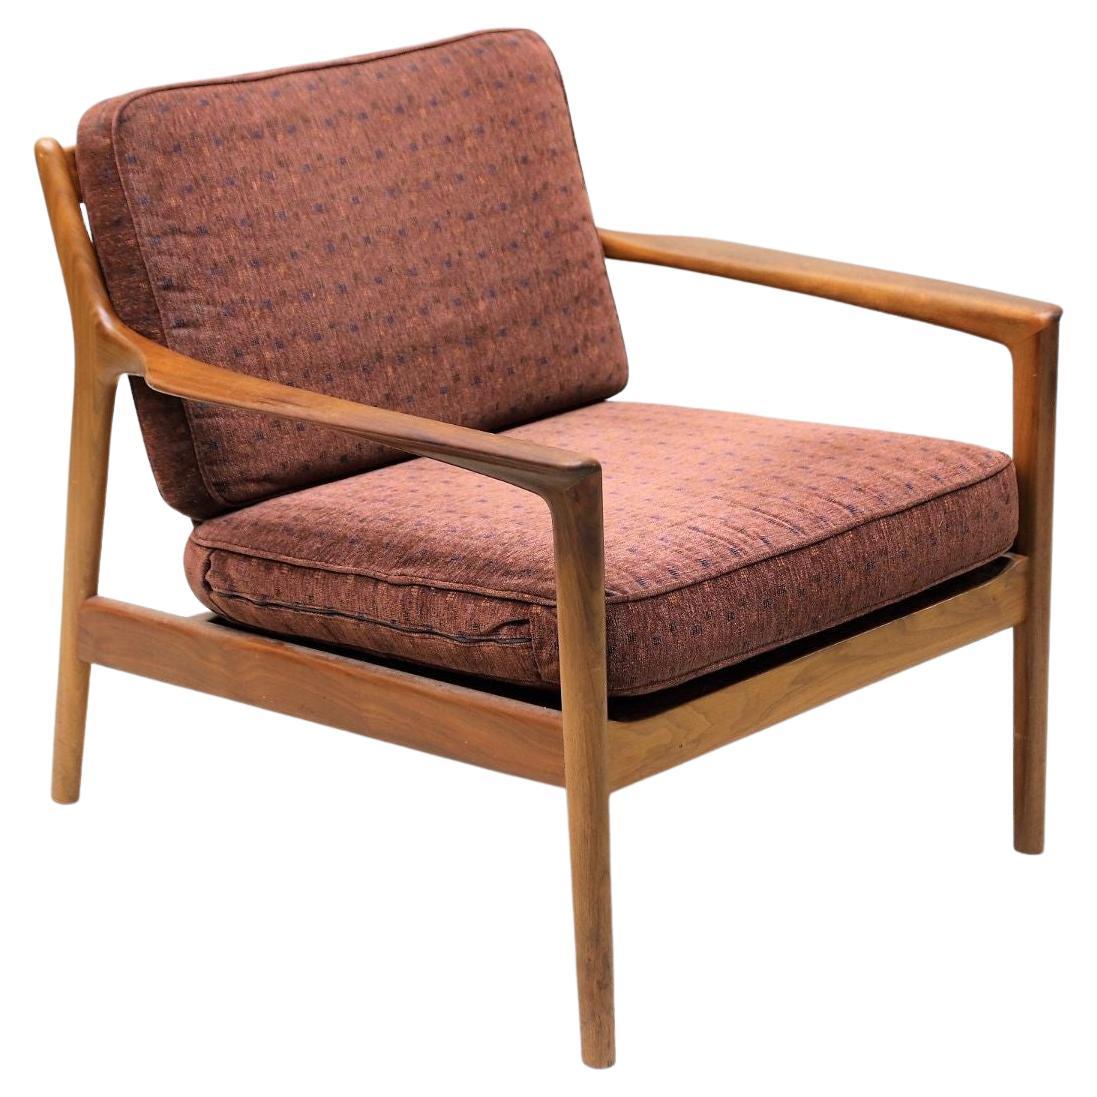 "USA-75" Armchair by Folke Ohlsson for DUX, Inc.